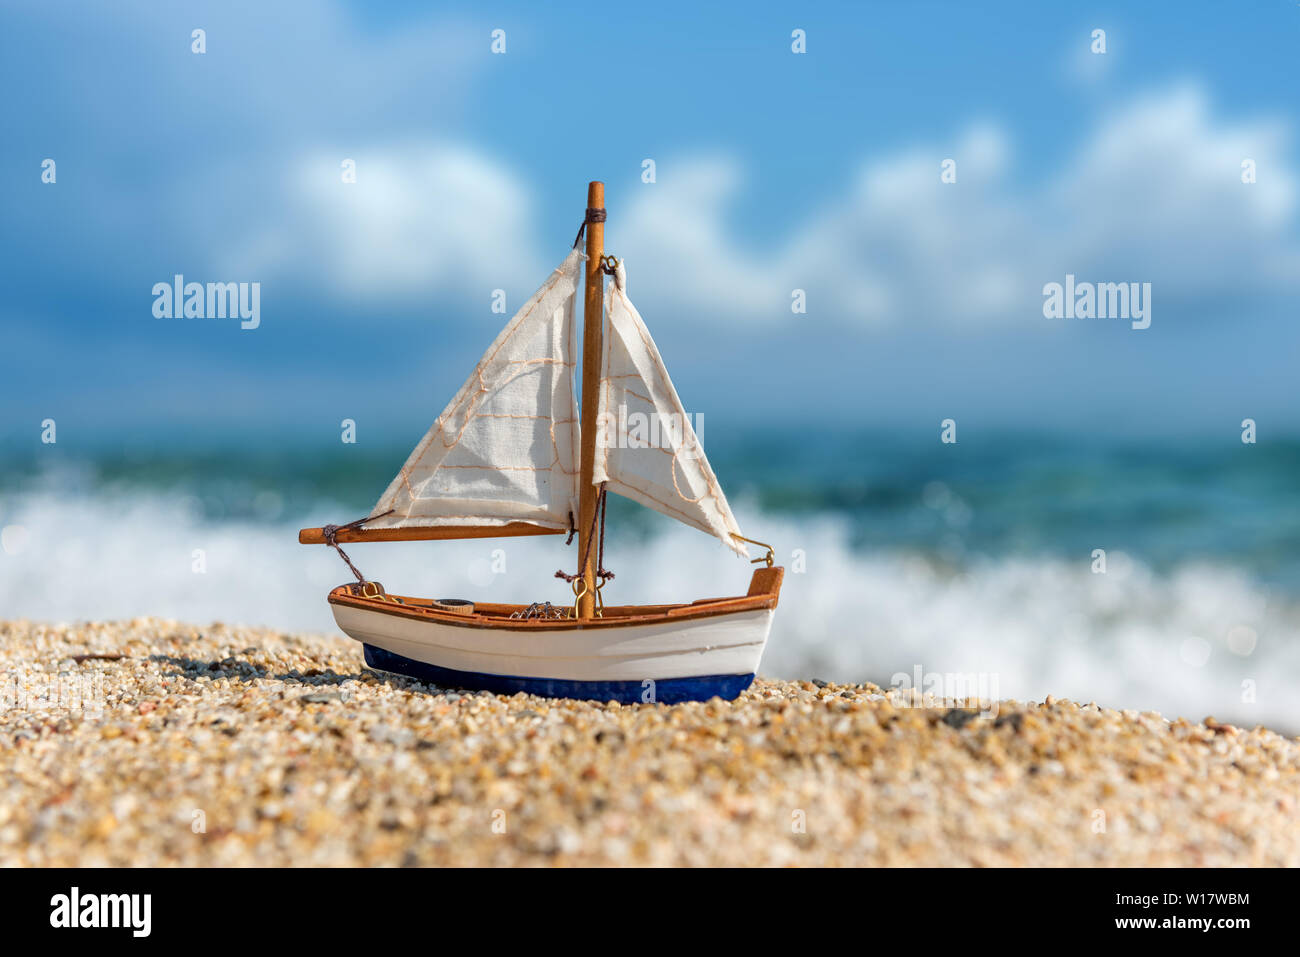 Image de la plage de sable tropicale et voilier jouet. Concept d'été Banque D'Images